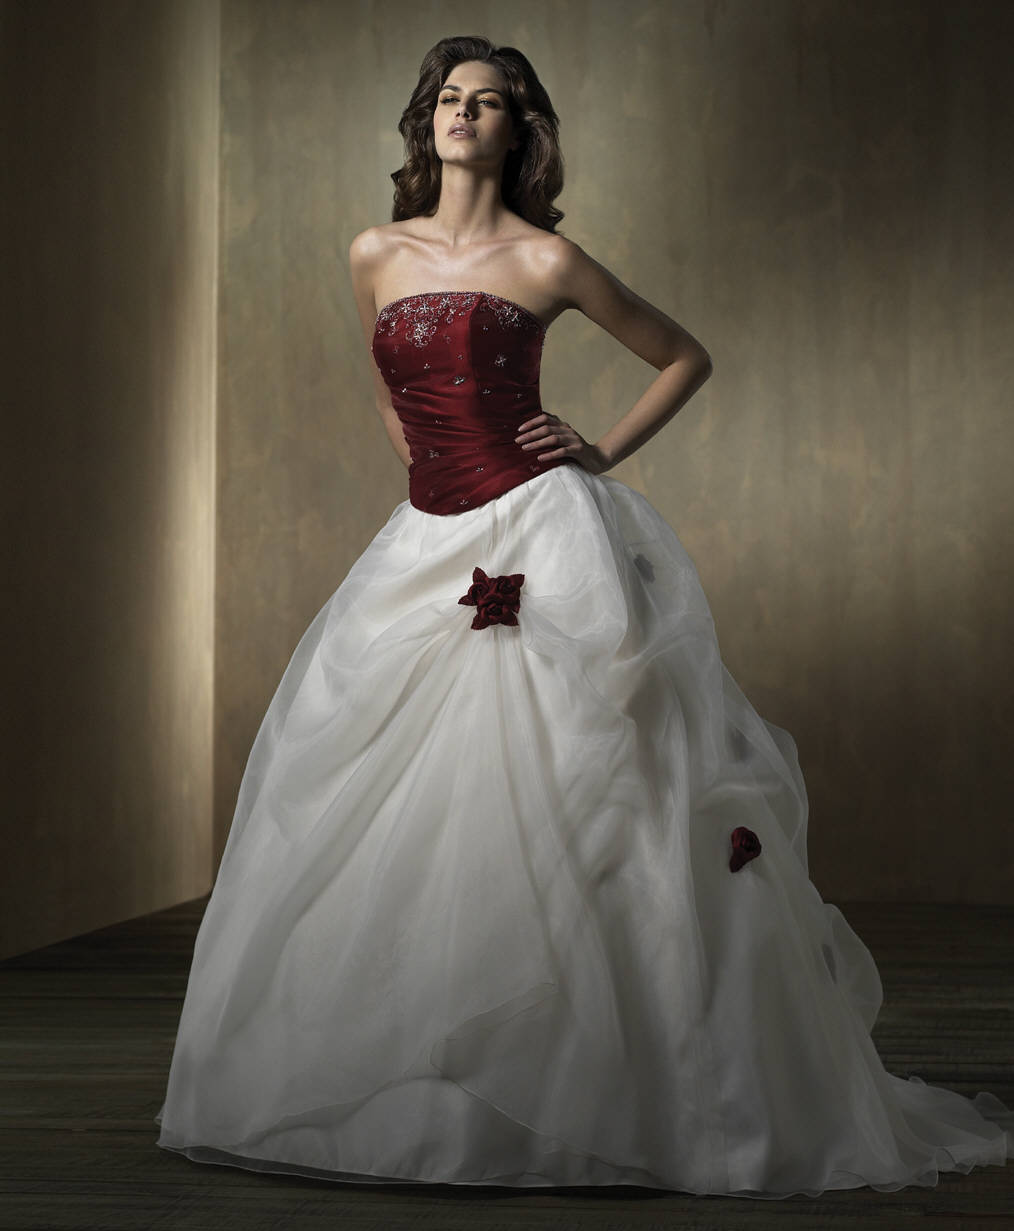 Orifashion Handmadestrapless wedding dress / gown 052